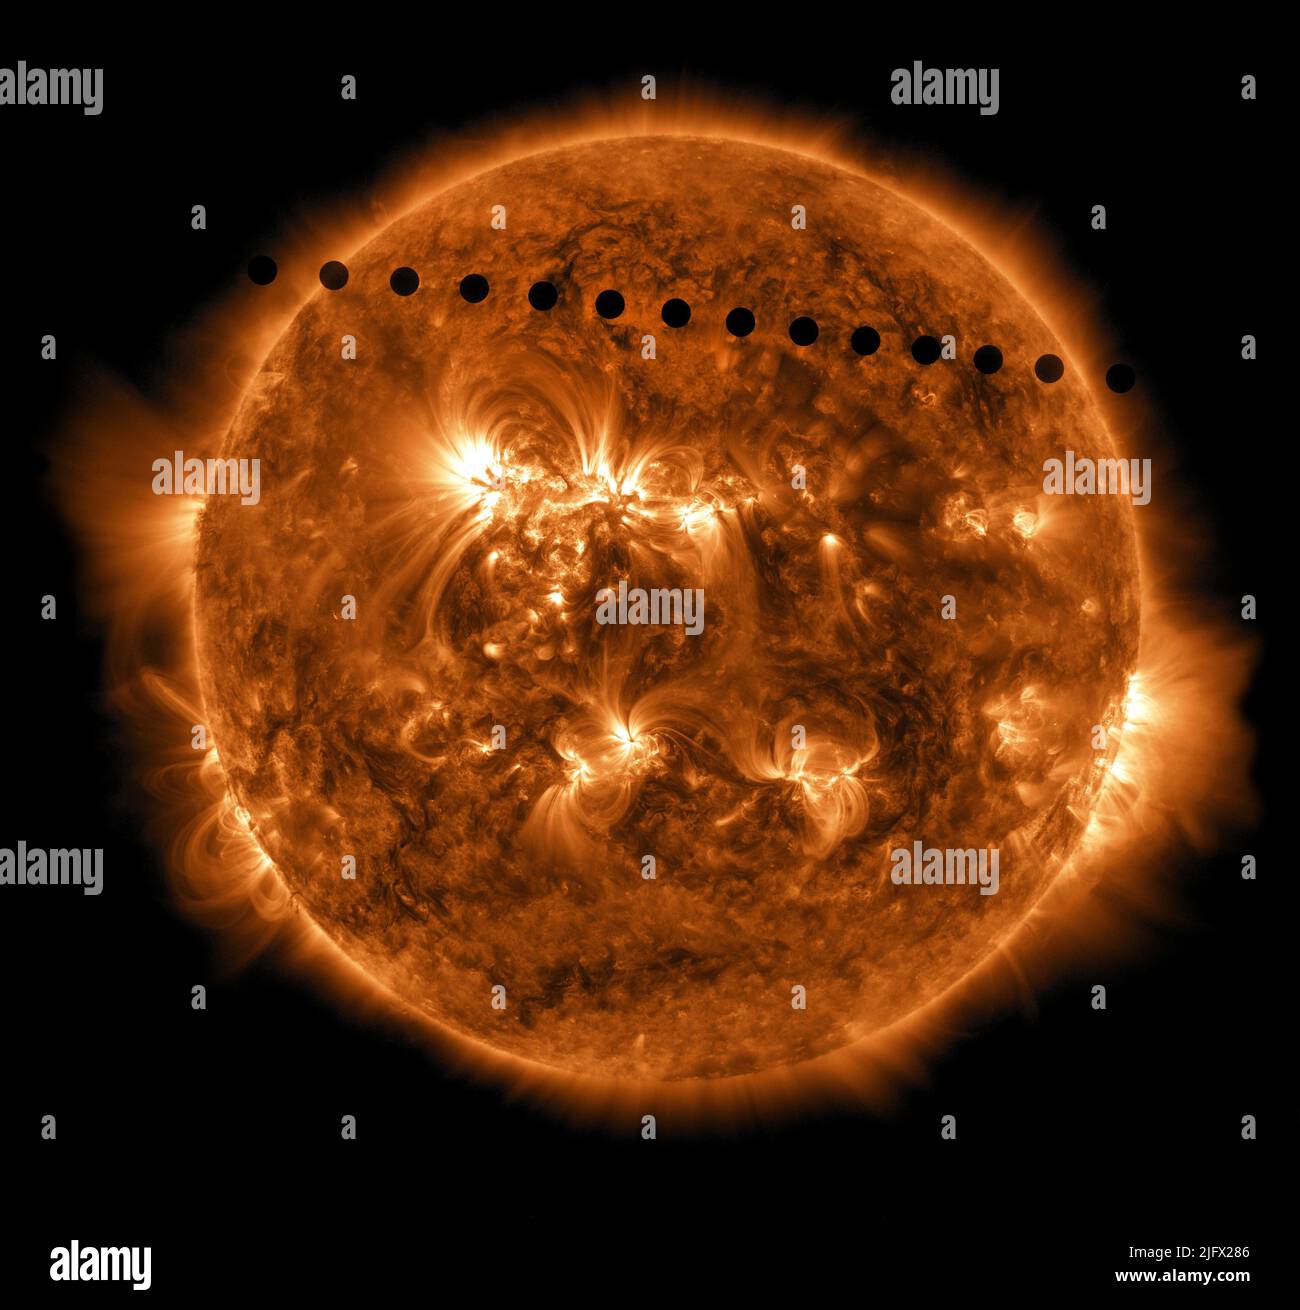 Le transit de Vénus à travers la face du soleil. Cet événement rarement observé se produit par paires séparées de huit ans les unes des autres par 105 ou 121 ans. 5 juin 2012, le transit précédent était en 2004 et le prochain ne se produira qu'en 2117. Cette image en time-lapse montre Vénus comme elle passe à travers le disque du Soleil, ce processus a pris environ six heures. Une version optimisée et numériquement améliorée d'une image de la NASA / crédit NASA / Observatoire de dynamique solaire Banque D'Images